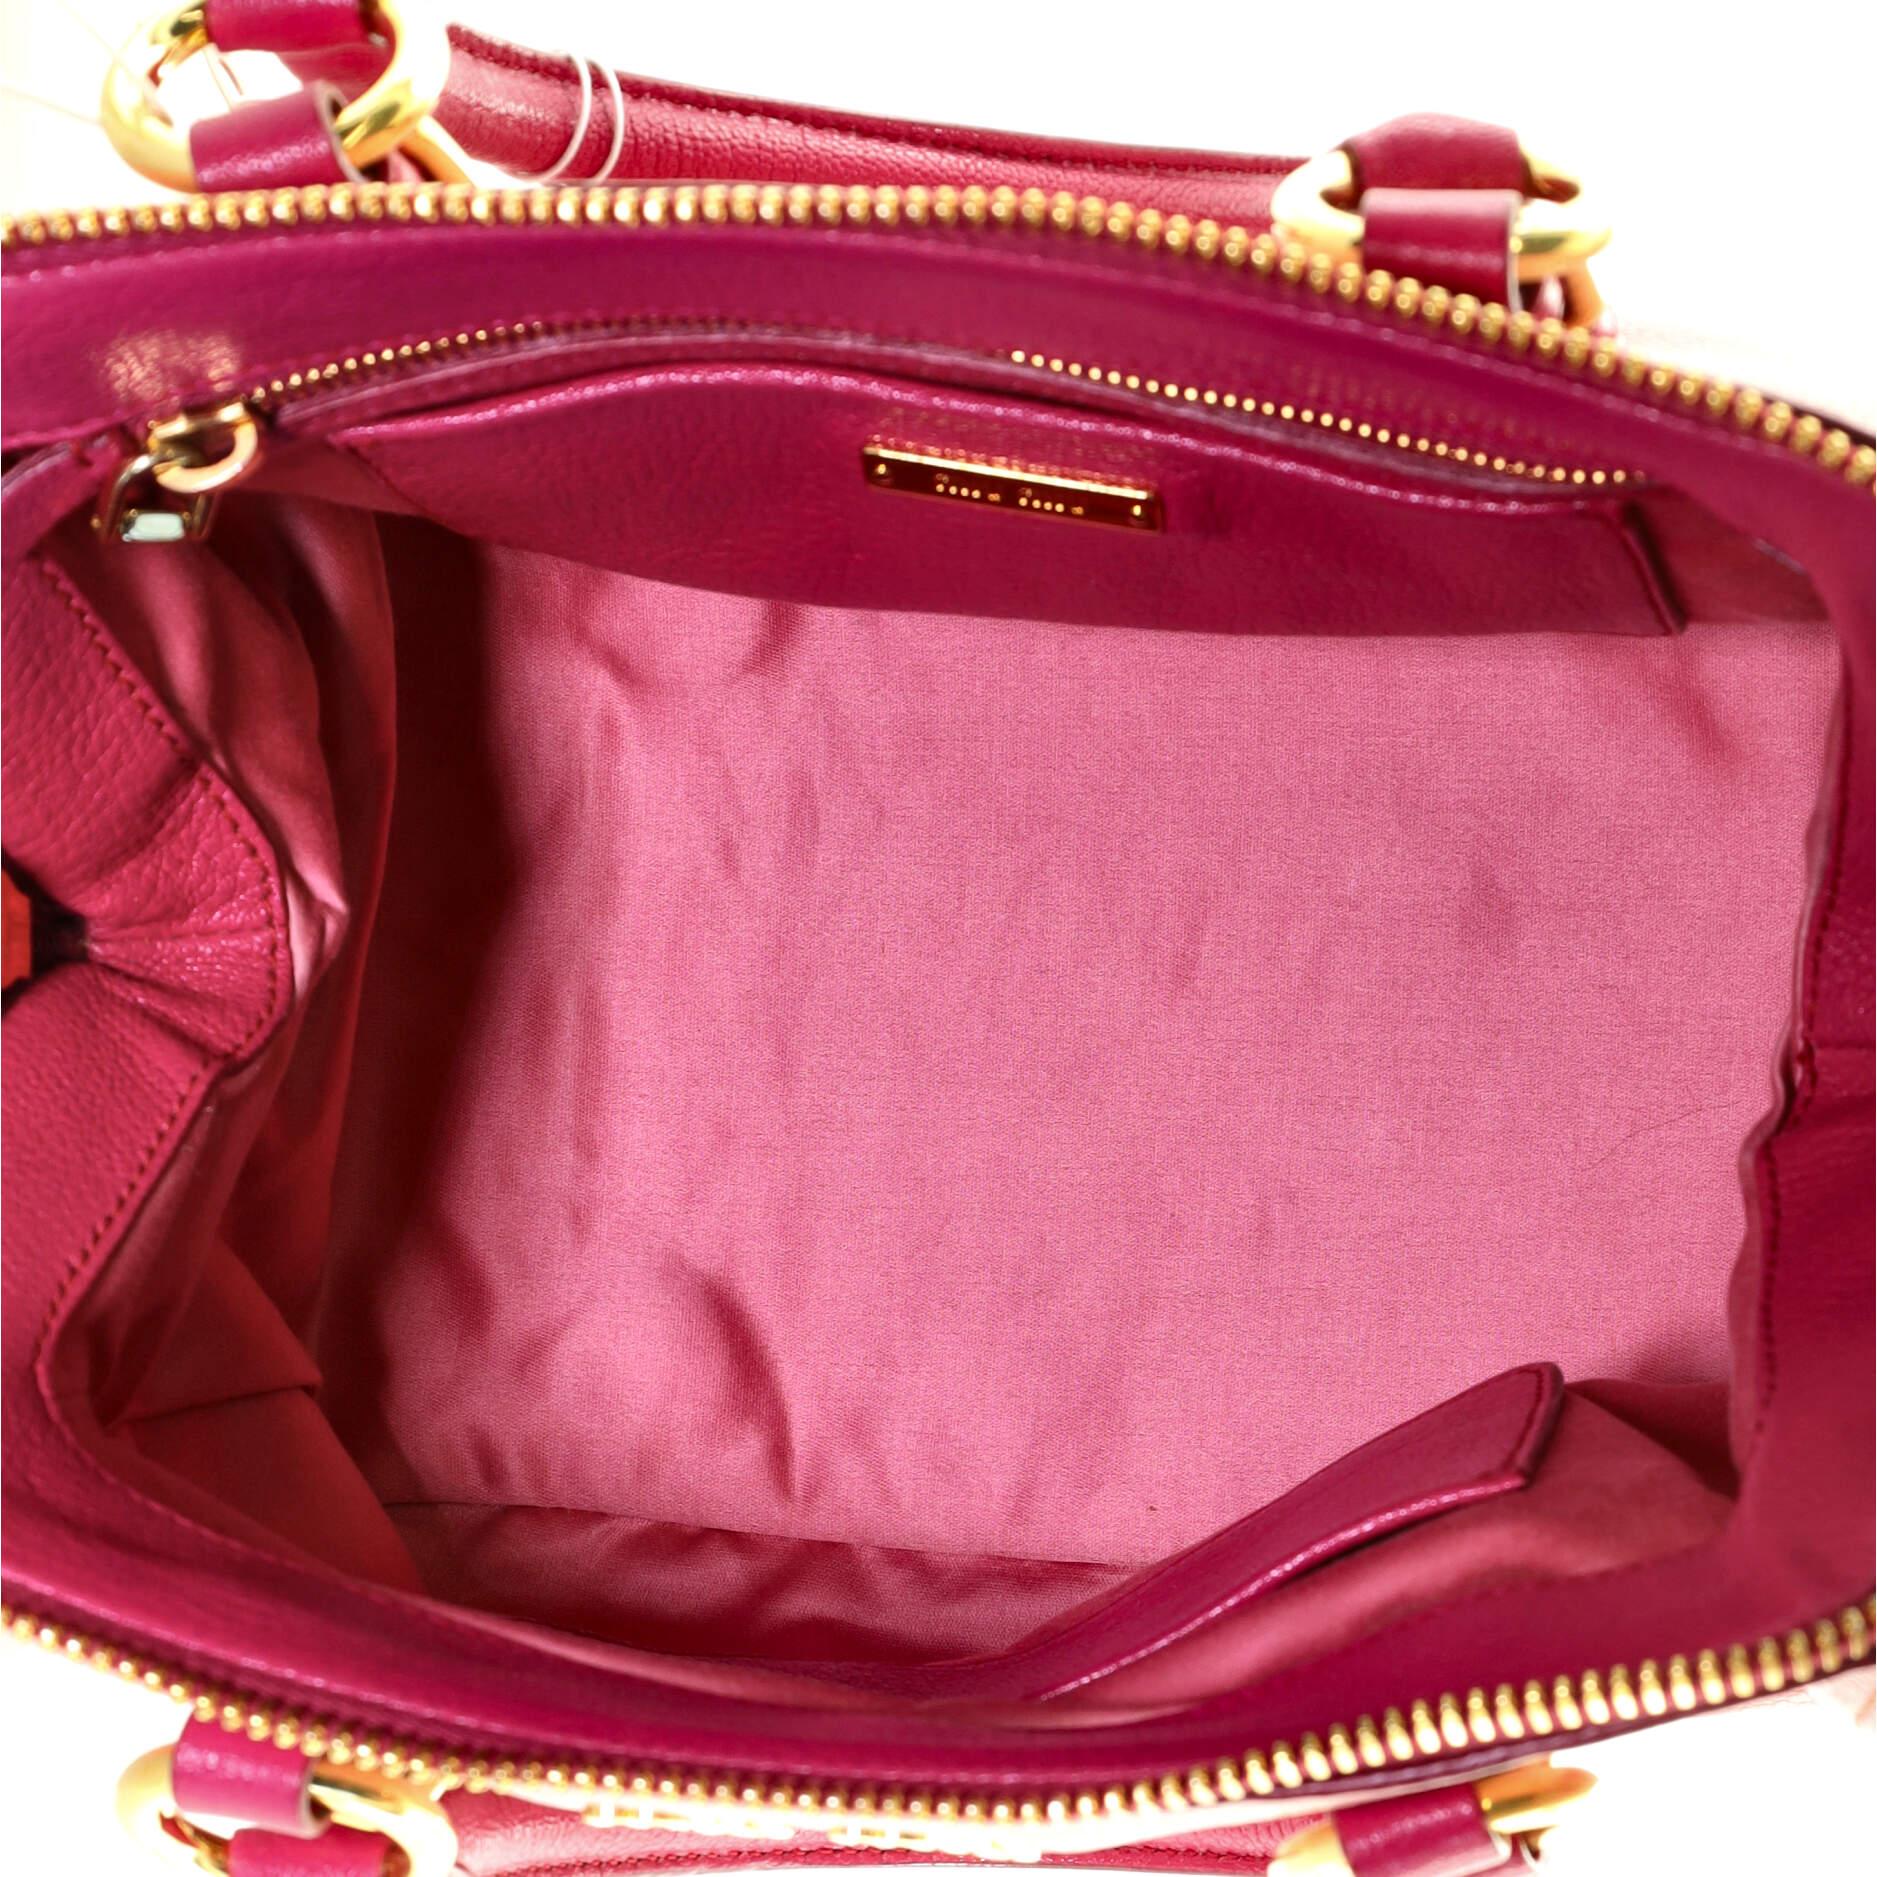 Pink Miu Miu Madras Bowler Bag Leather Small